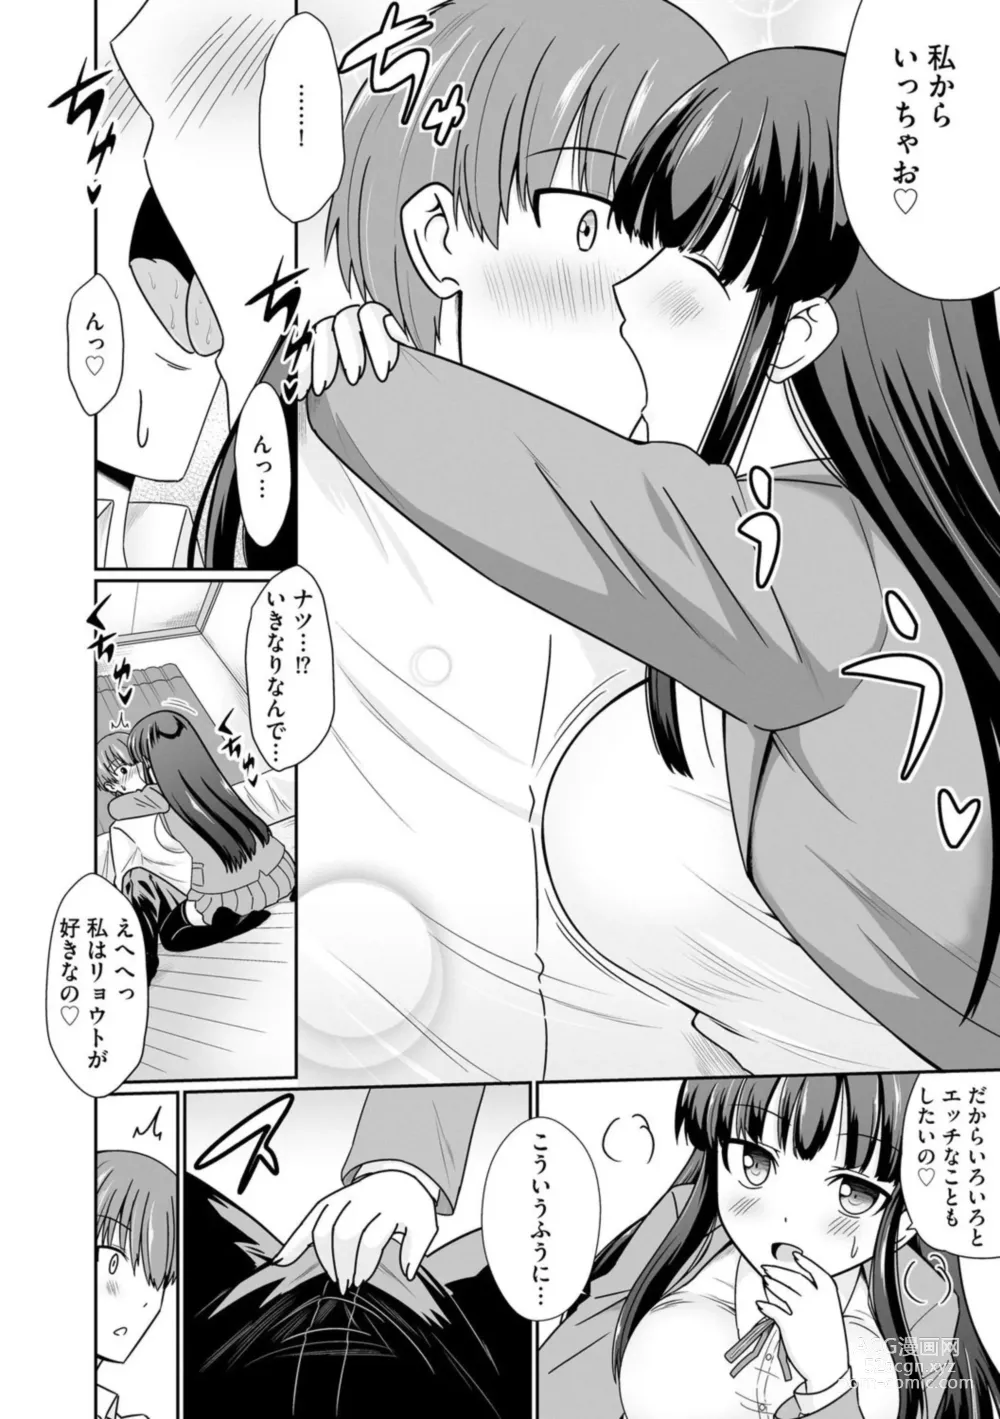 Page 6 of manga Ichiban wa Watashi ni Kimete 1